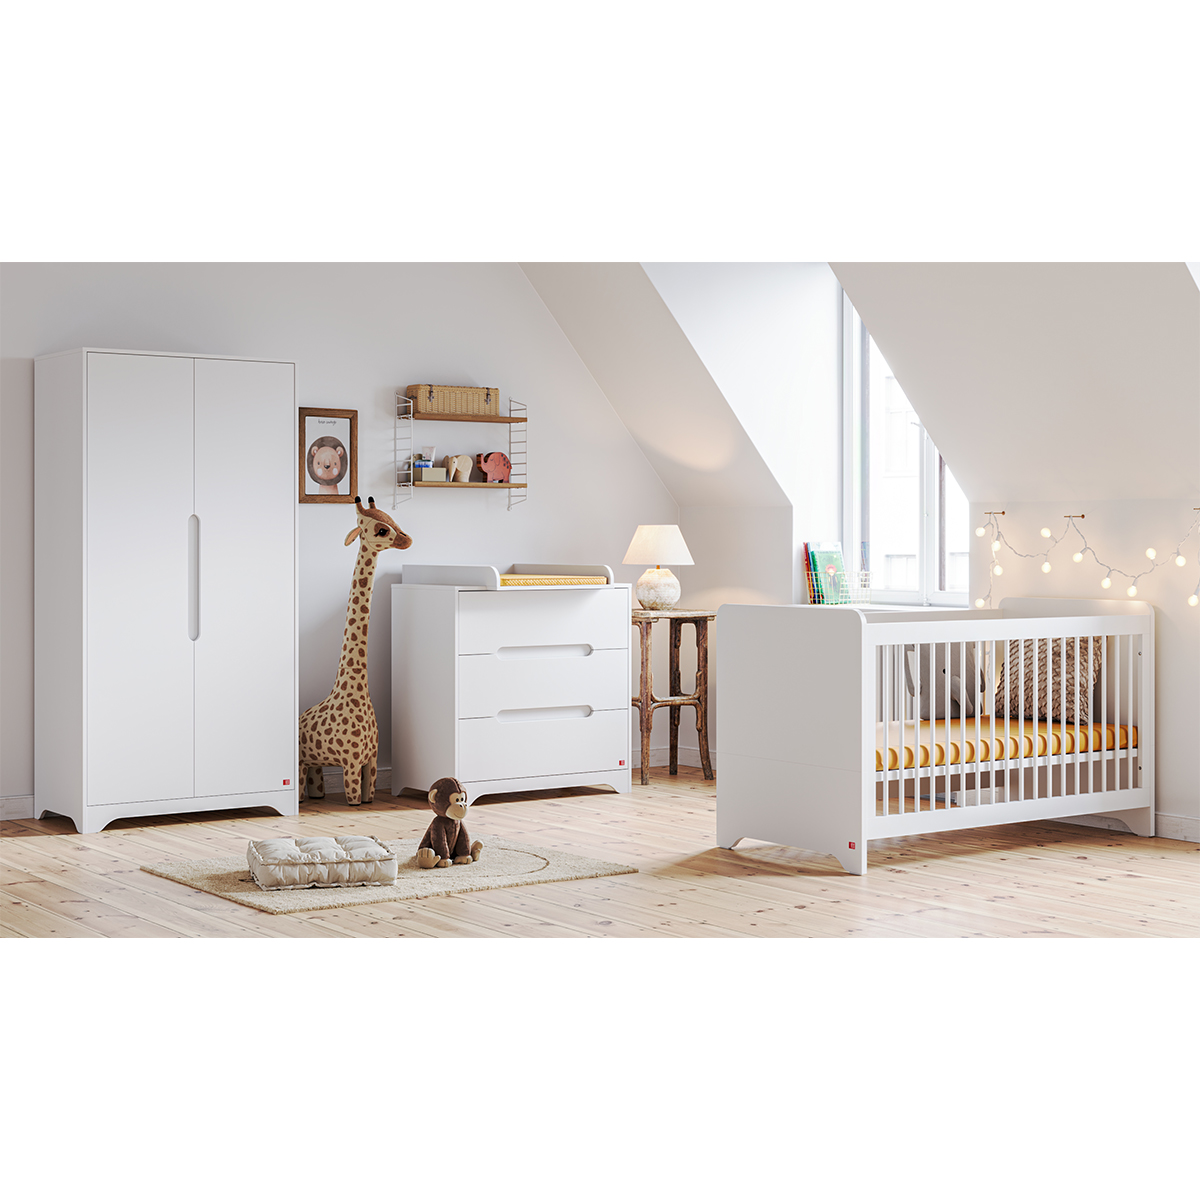 Chambre bébé complète Milenne Vox lit bébé, commode et armoire parisienne